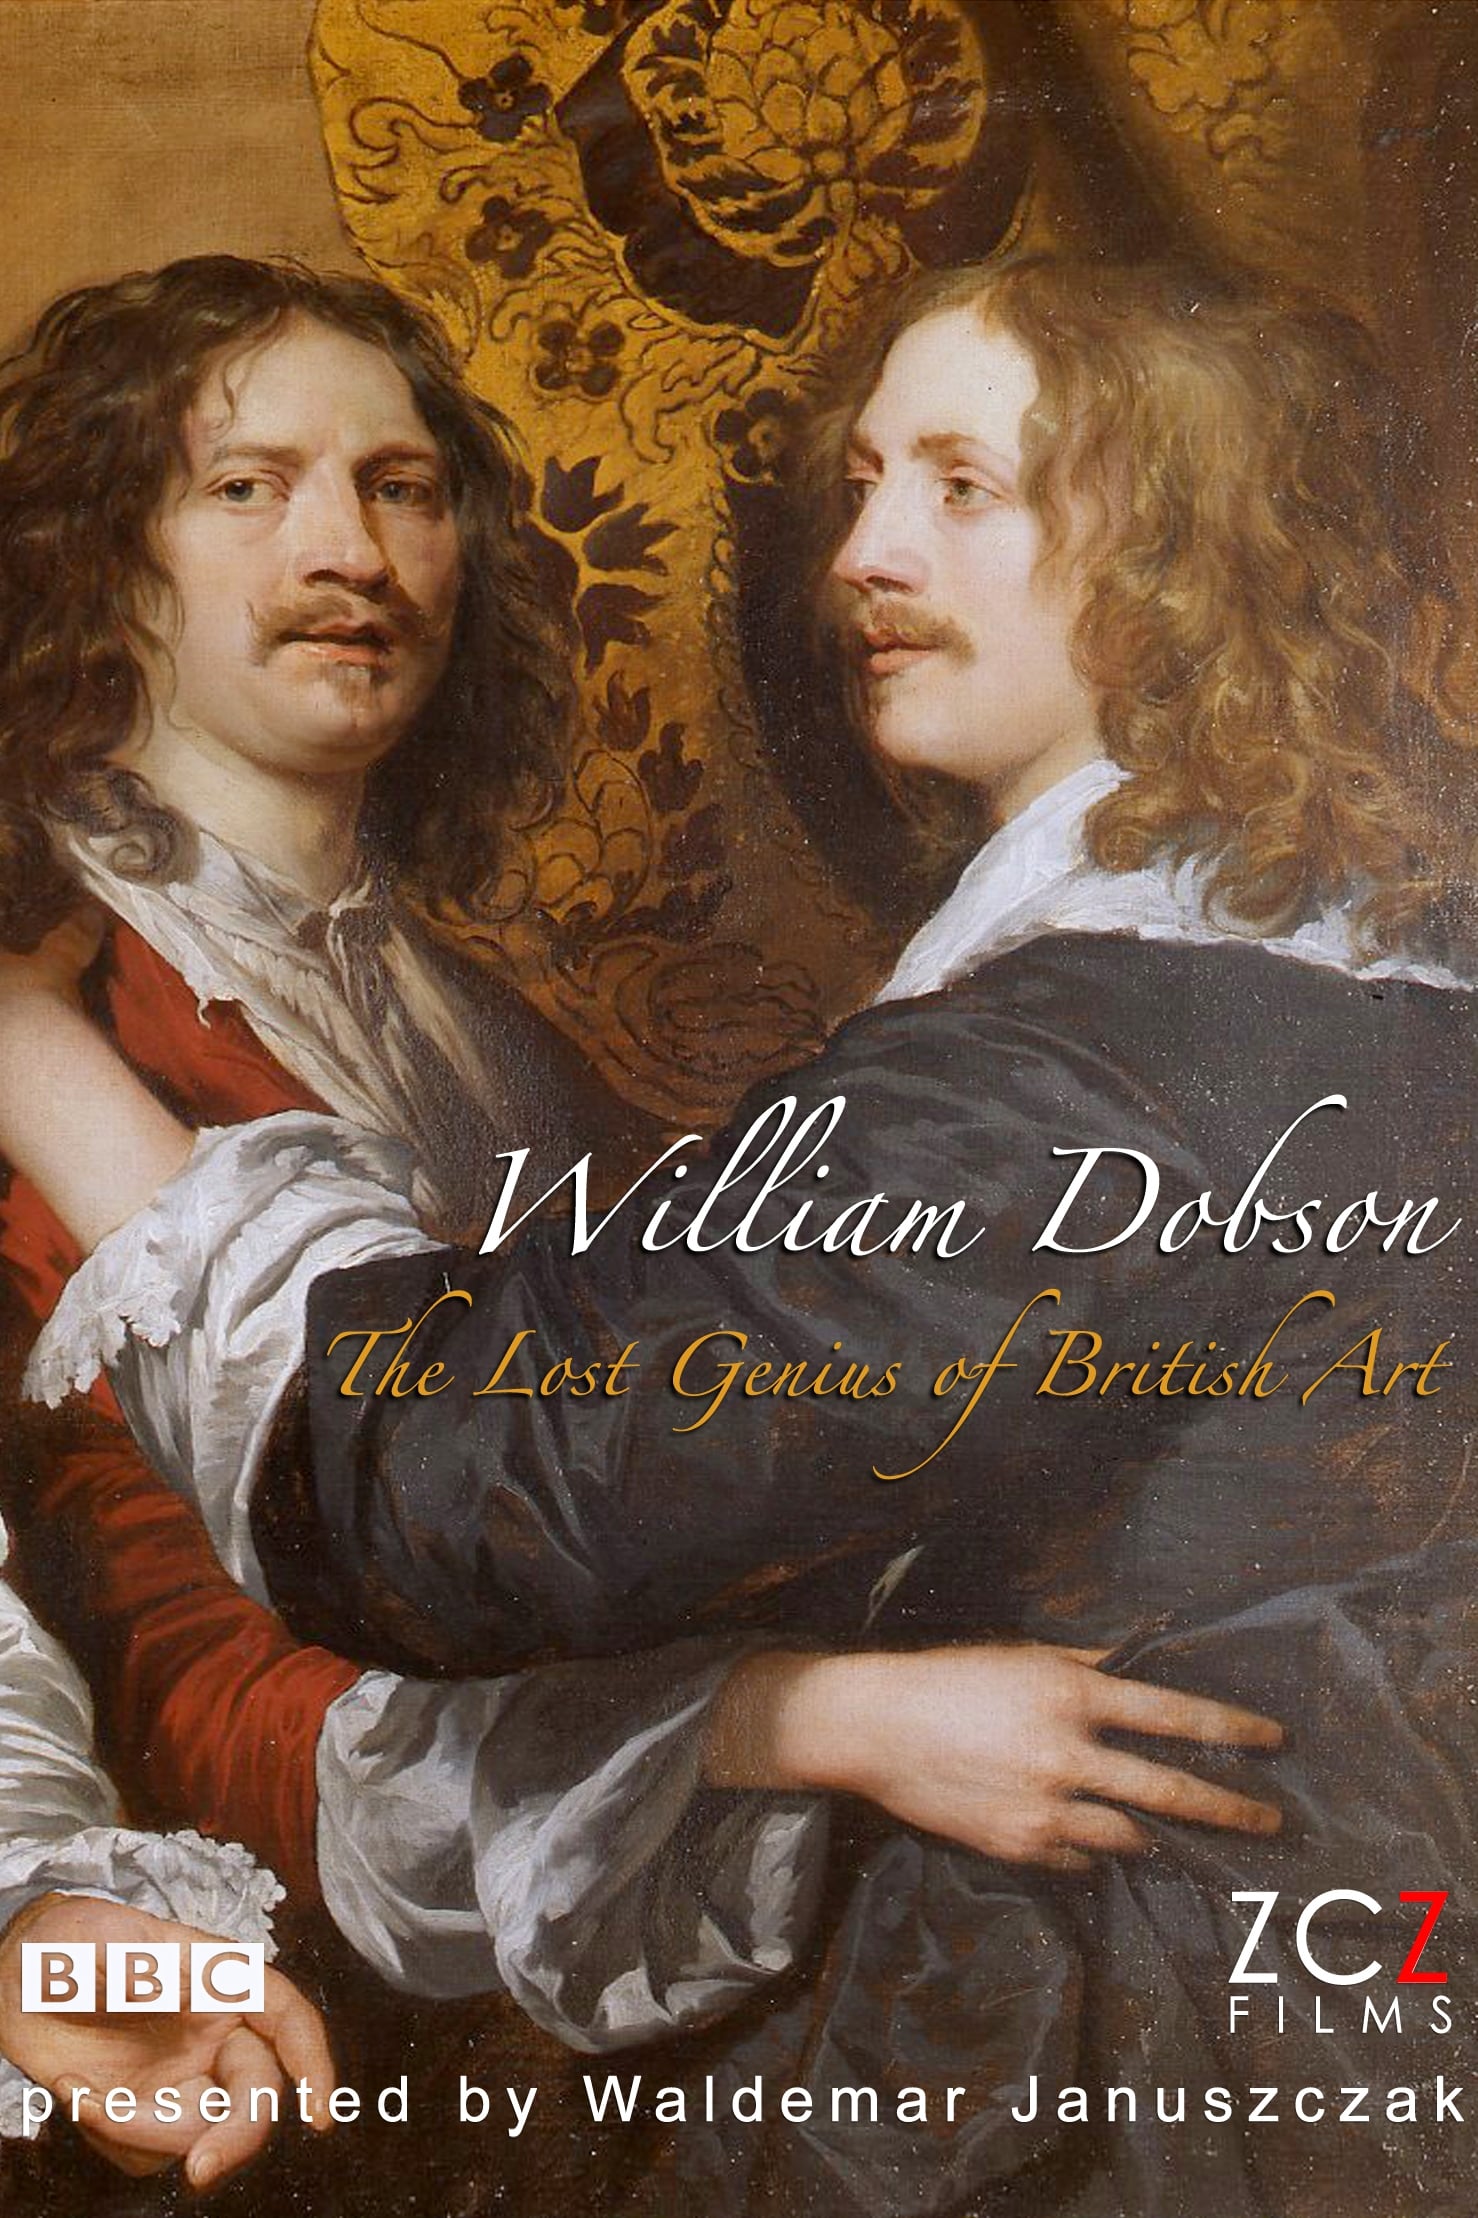 The Lost Genius of British Art: William Dobson